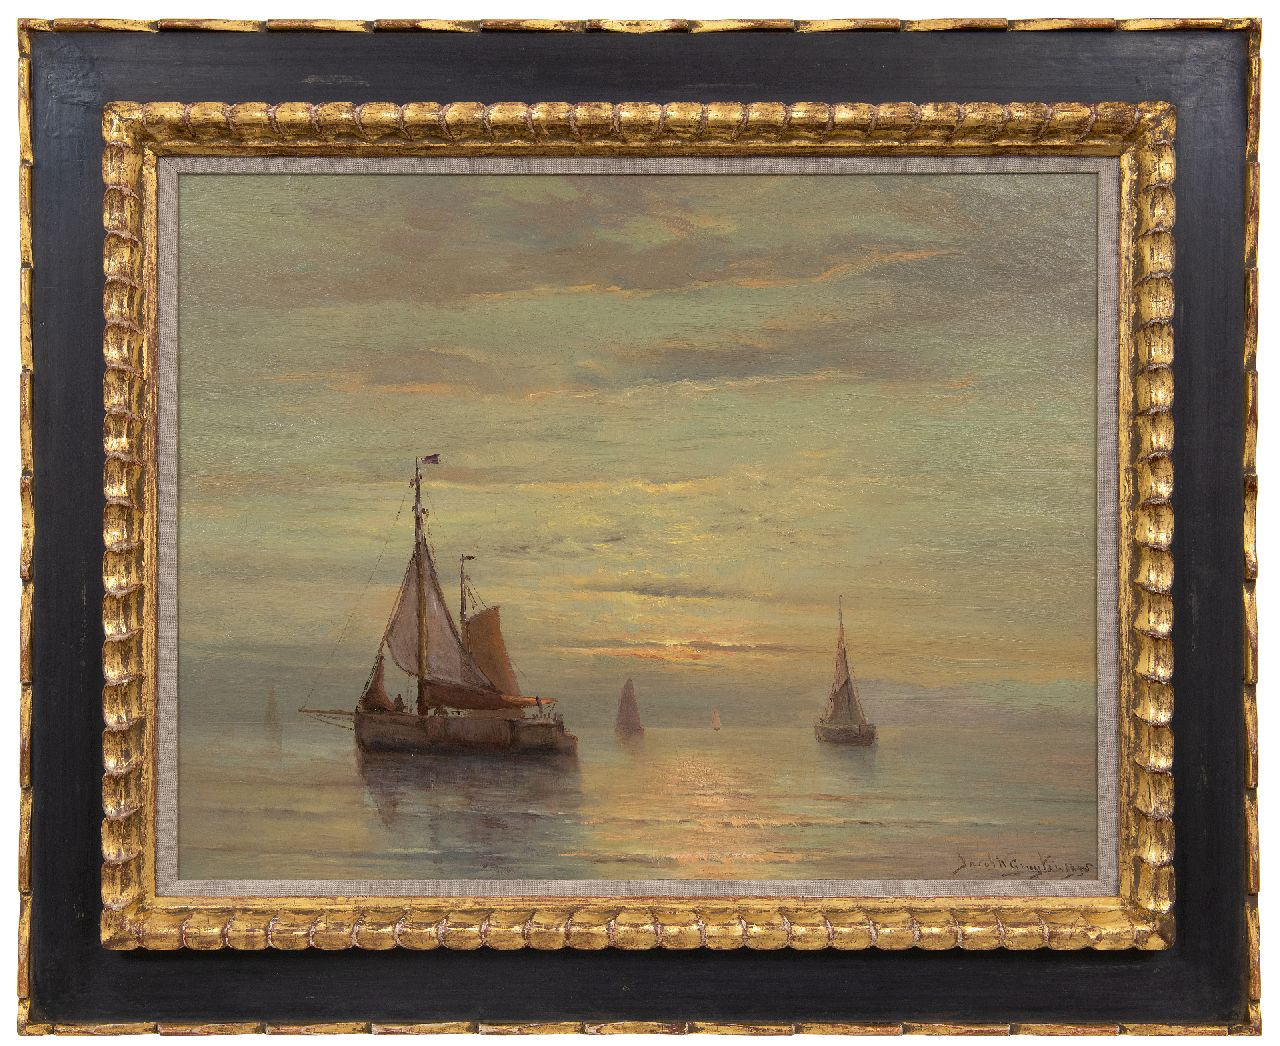 Gruijter J.W.  | Jacob Willem Gruijter | Schilderijen te koop aangeboden | Schepen op kalme zee bij zonsondergang, olieverf op paneel 50,4 x 65,0 cm, gesigneerd rechtsonder en gedateerd 1905, zonder lijst